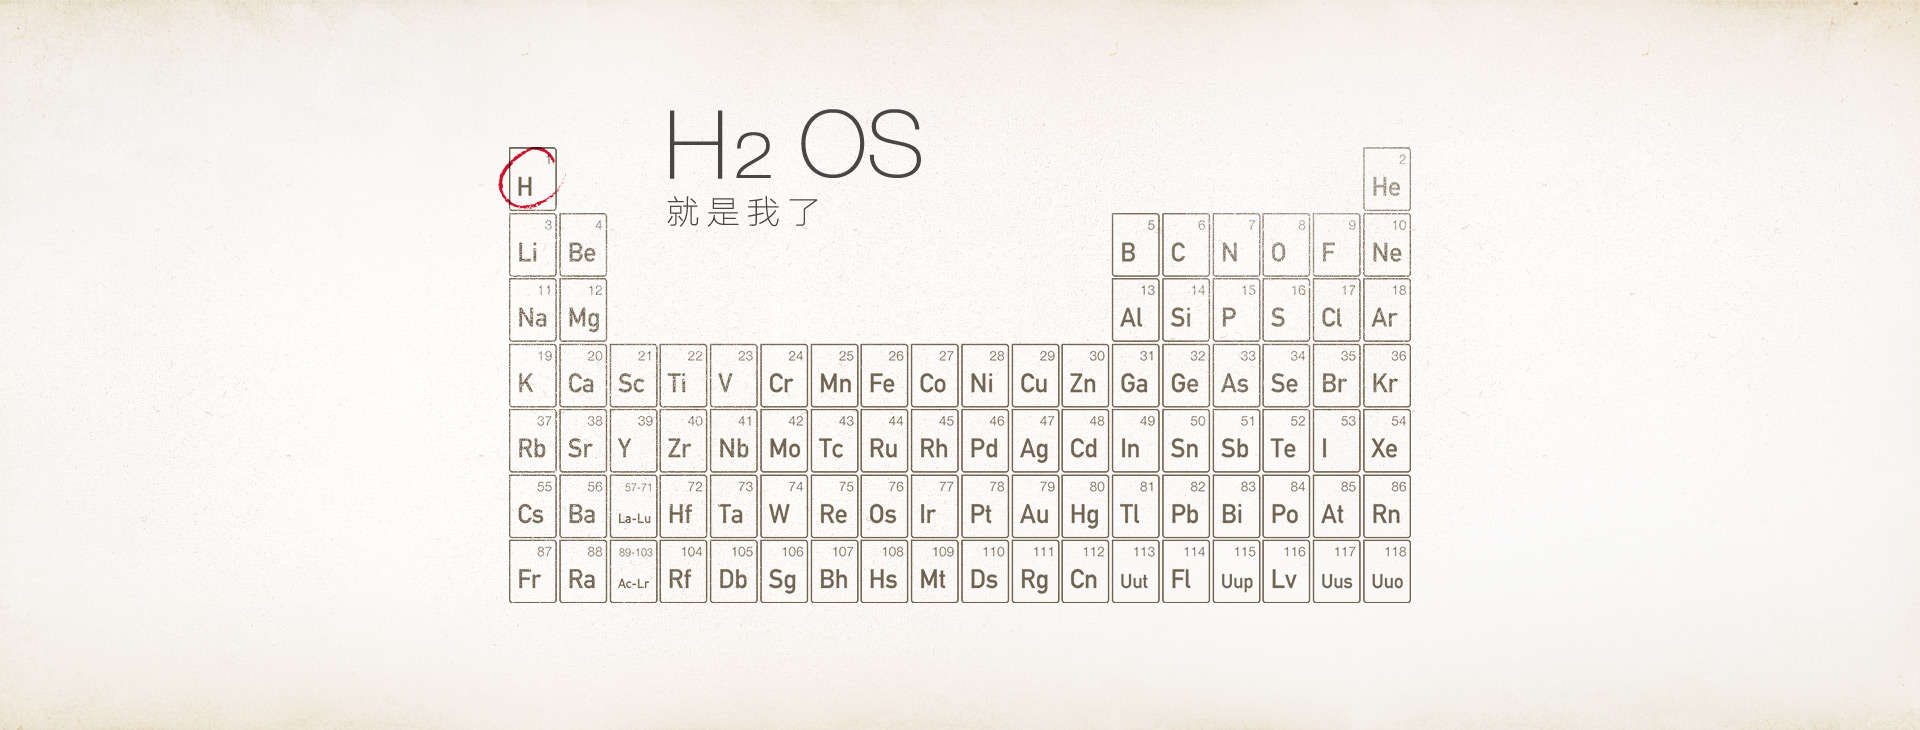 oneplus hydrogen os